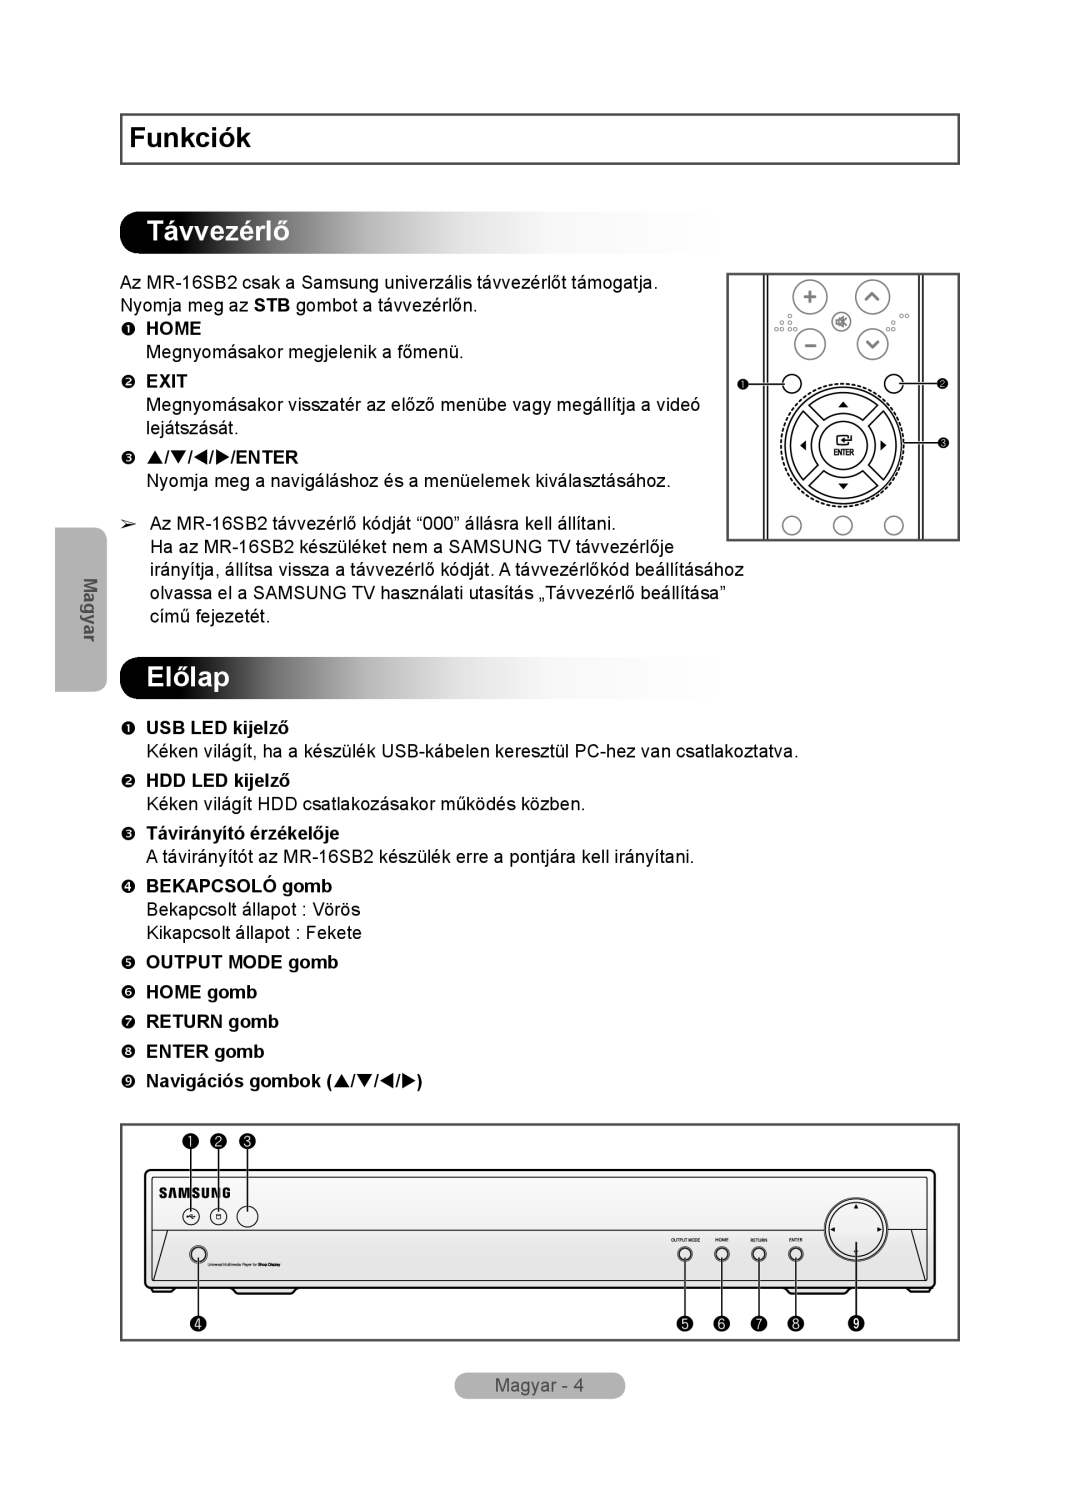 Samsung MR-16SB2 Távvezérlő, Előlap,  USB LED kijelző,  HDD LED kijelző,  Távirányító érzékelője, Funkciók, Magyar 